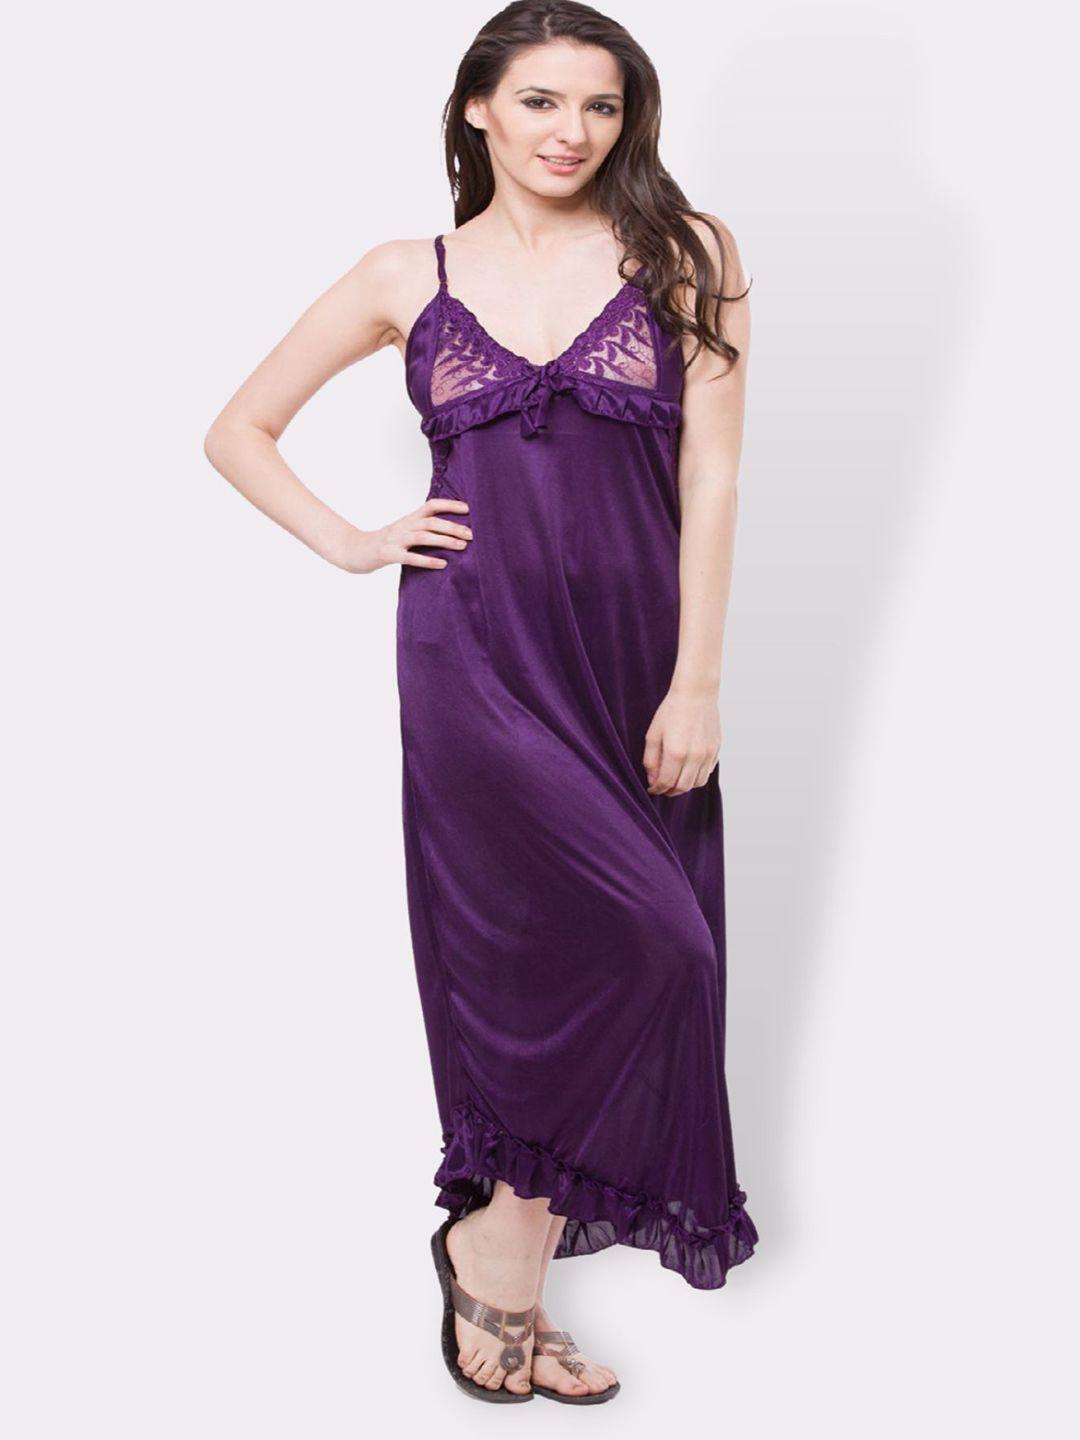 Fasense Women Purple Maxi Nightdress